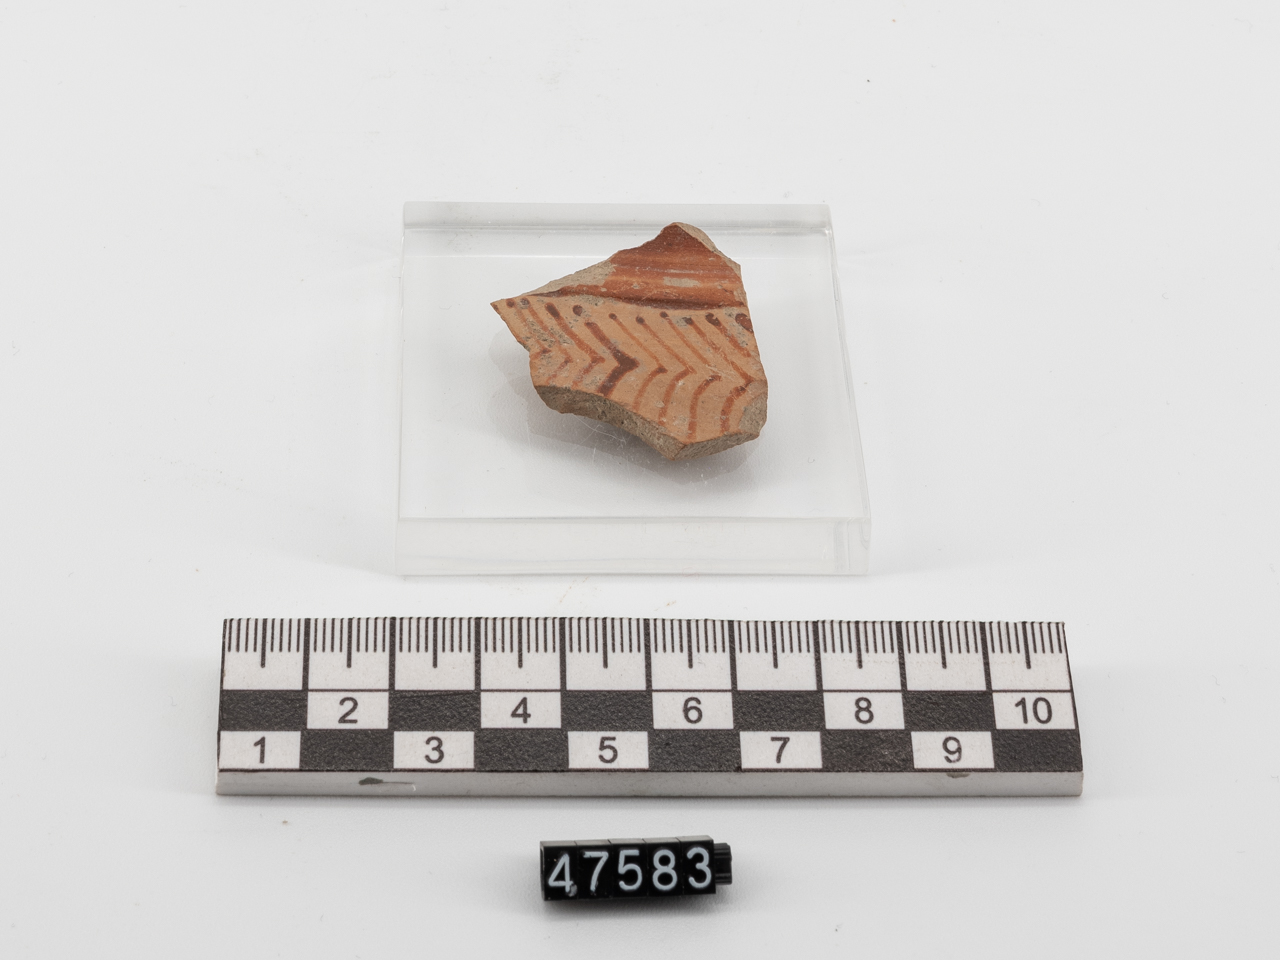 frammento/ parete - Miceneo IIIB2-IIIC1 (PERIODIZZAZIONI/ PROTOSTORIA/ Età del Bronzo/ Età del Bronzo recente)